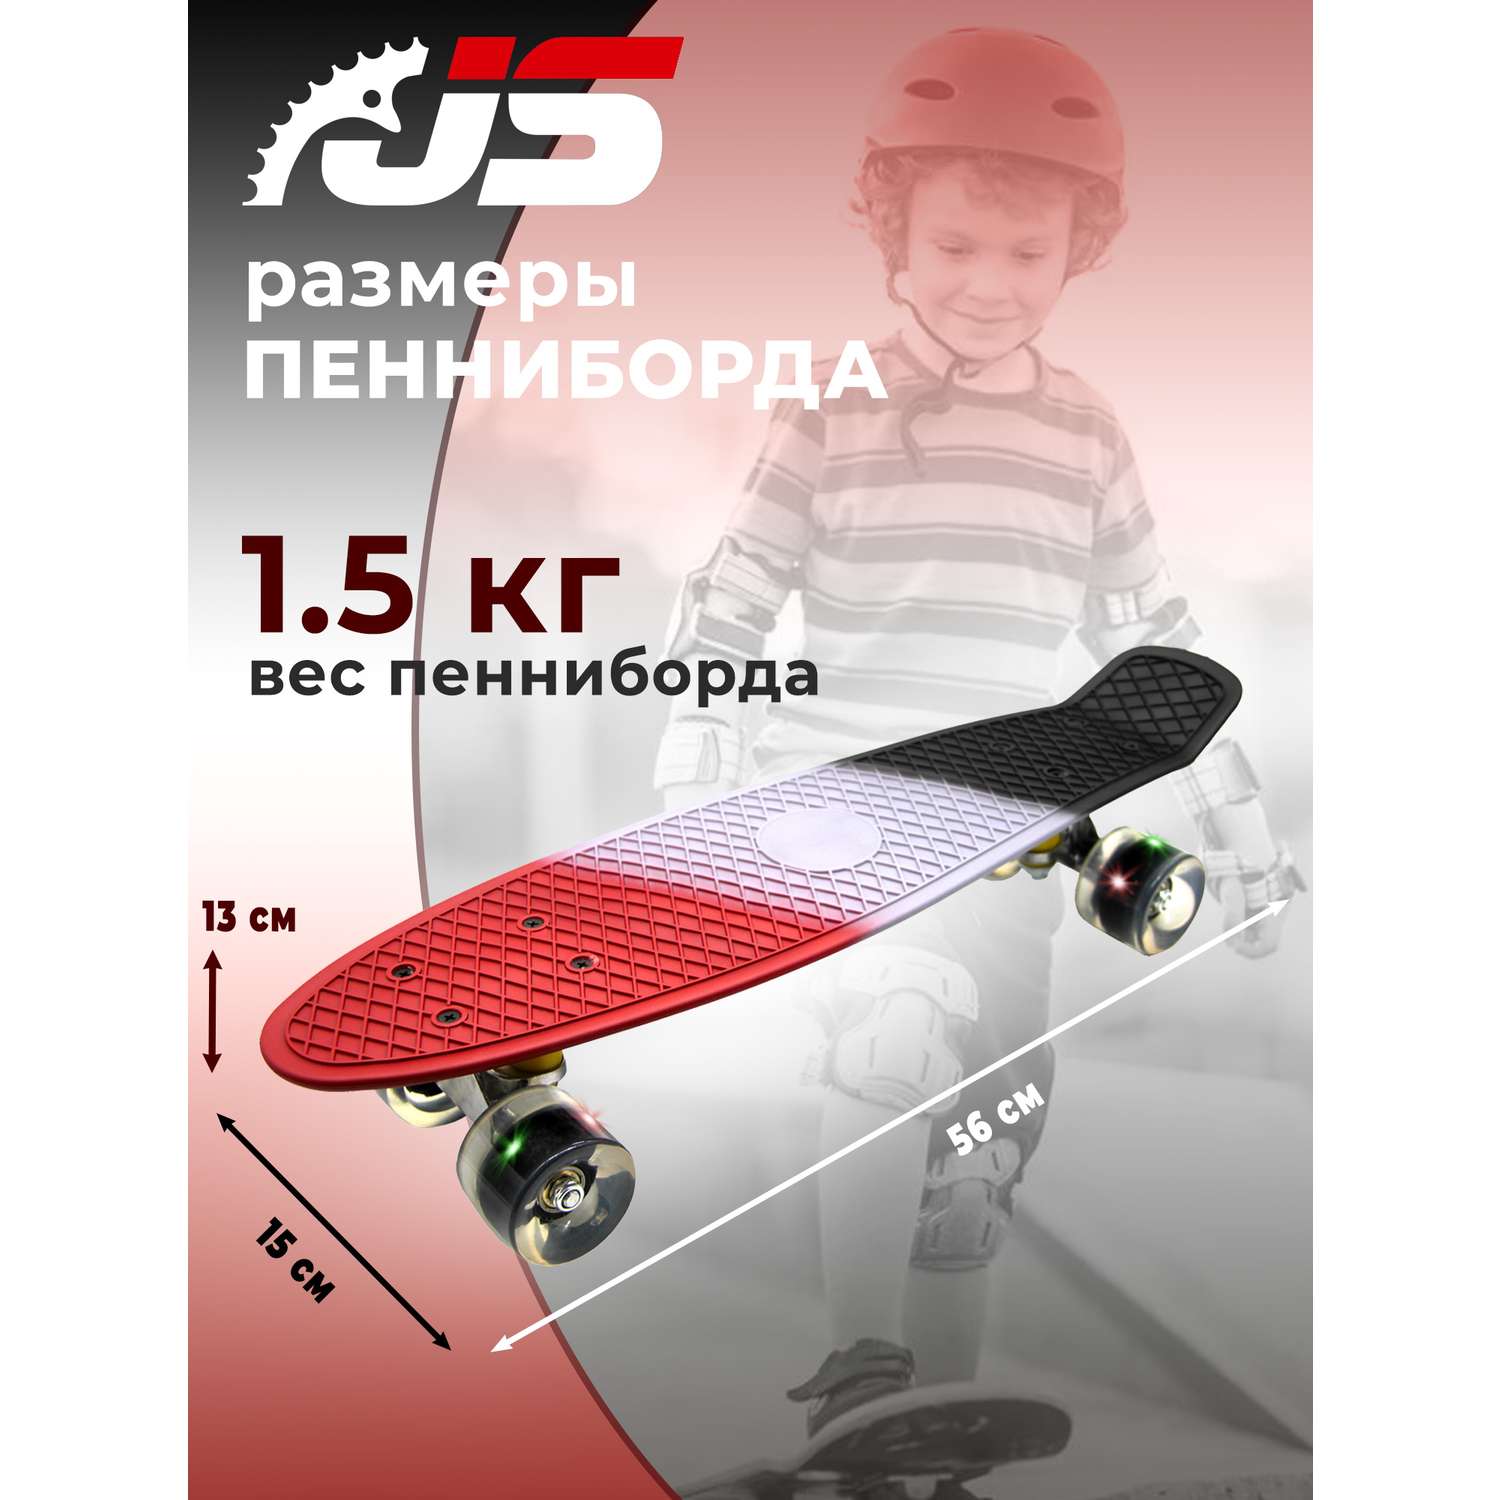 Скейтборд JETSET детский красный серый черный - фото 2